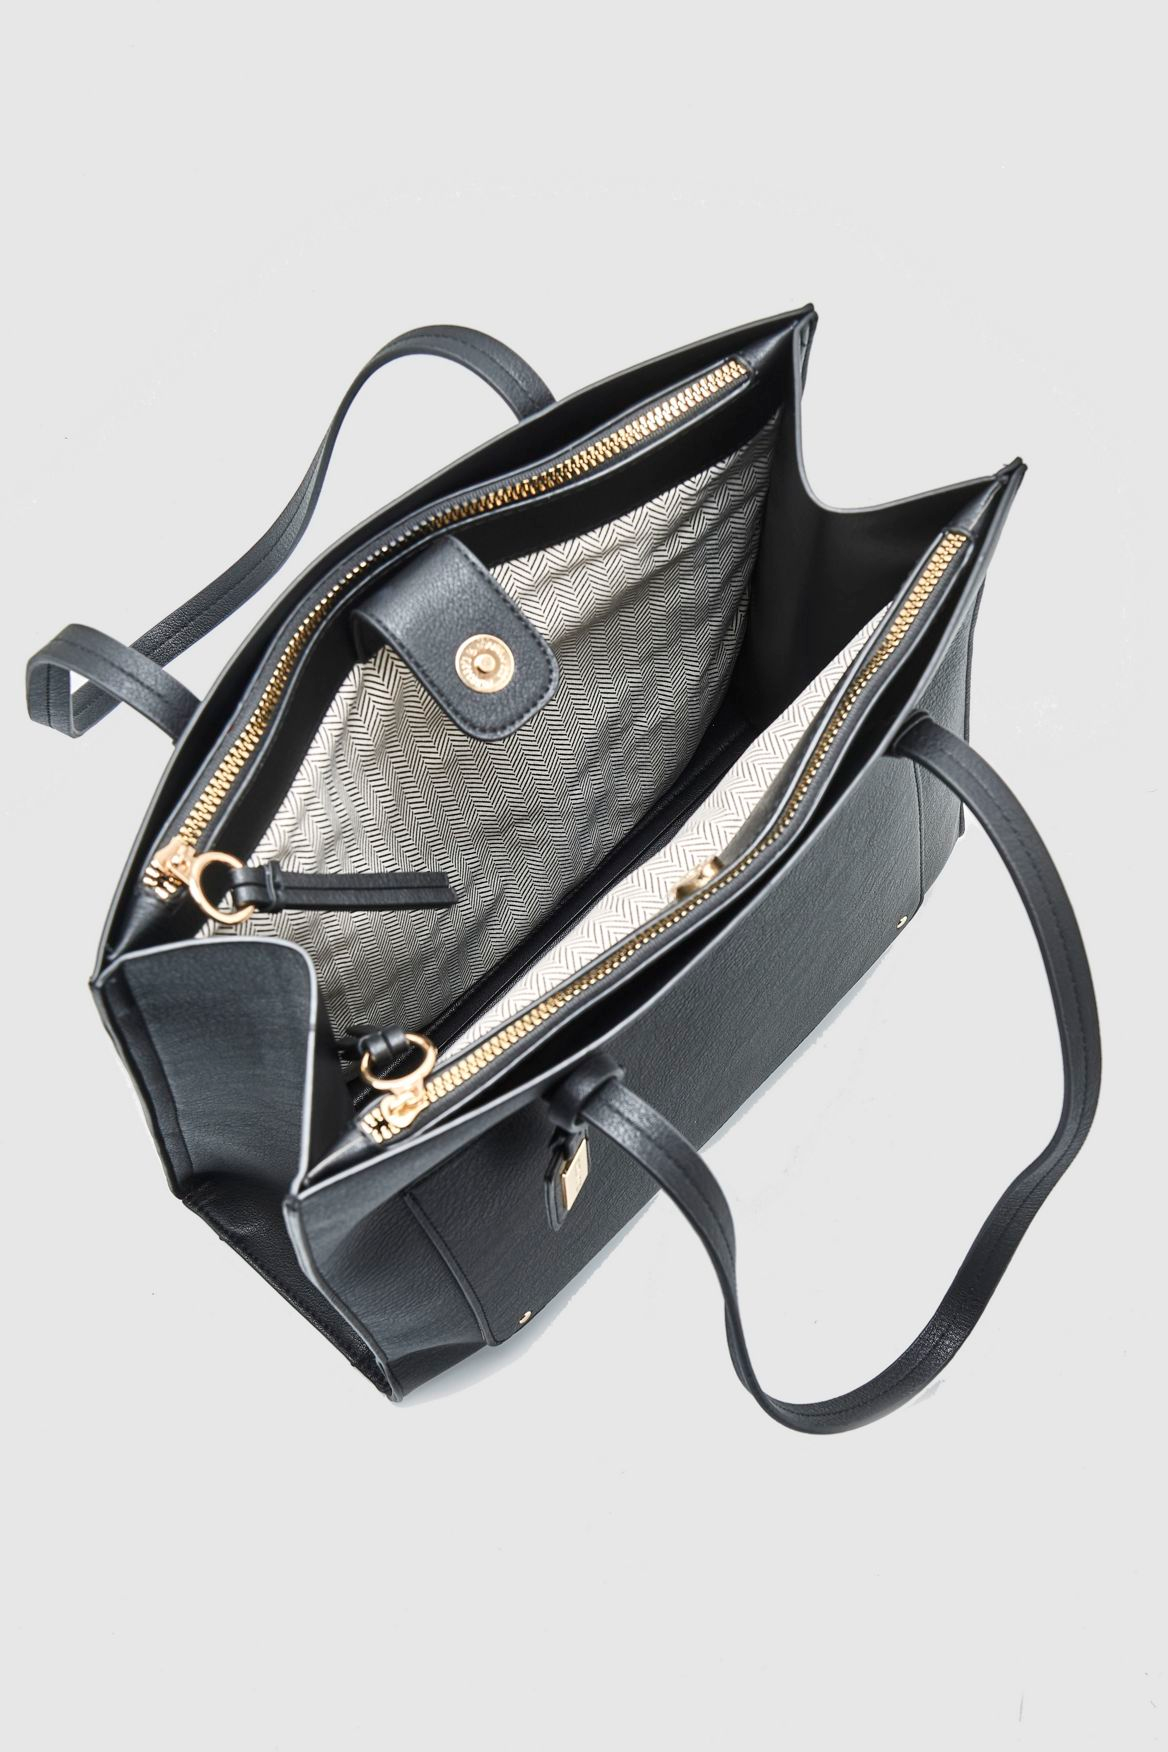 Laura Jones Triple Compartment Tote Bag – Strandbags New Zealand